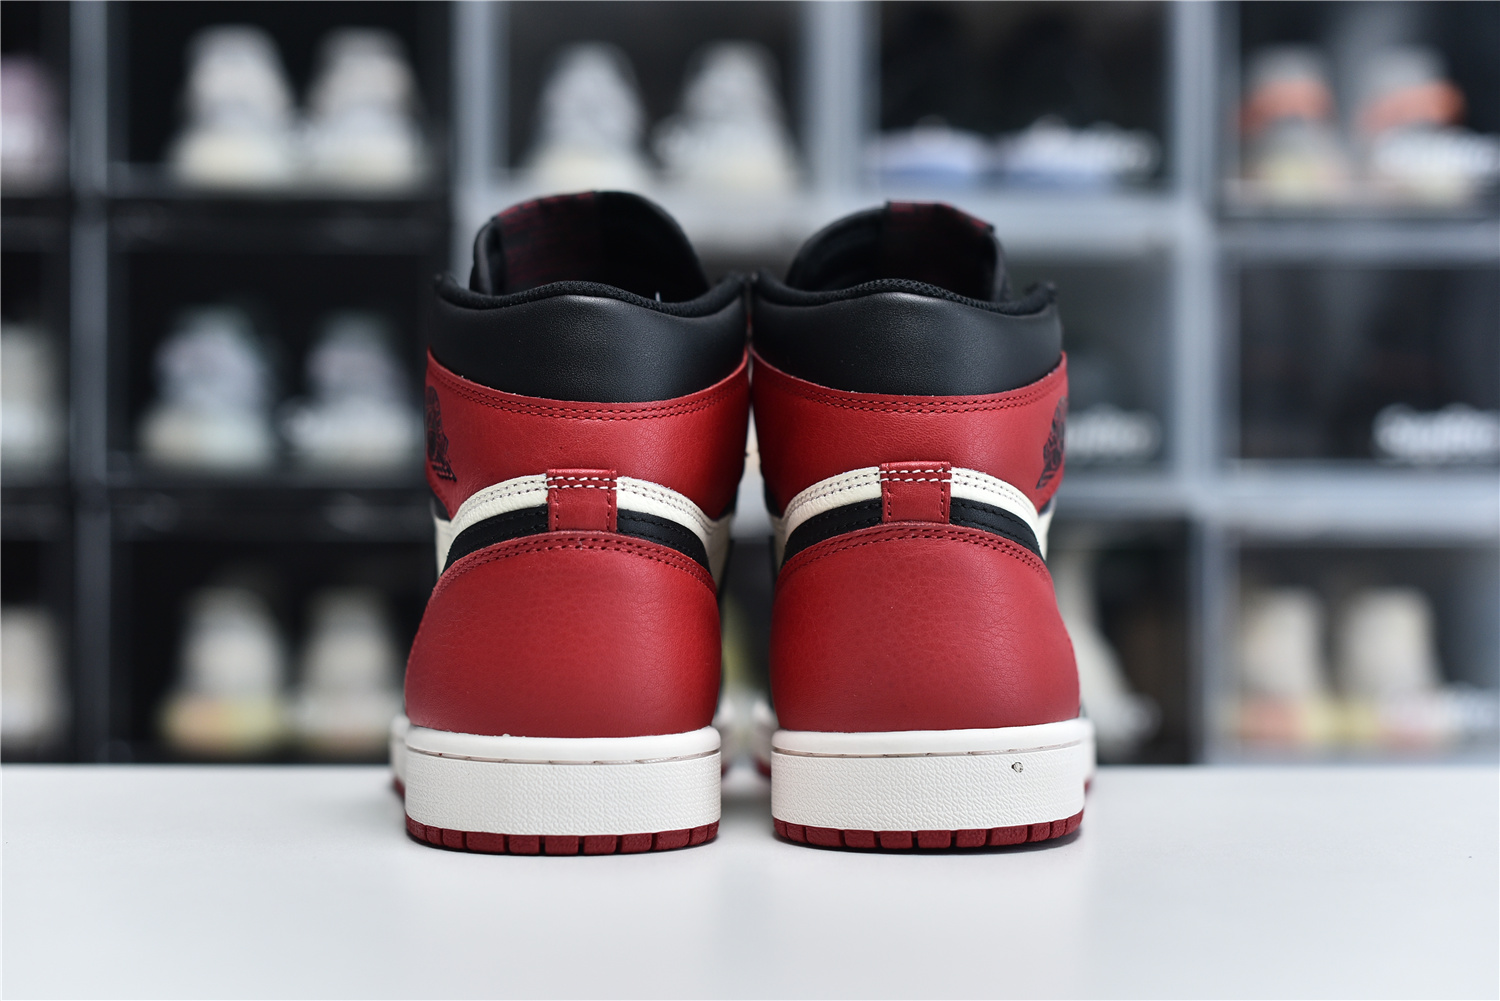 Nike Air Jordan 1 Retro High Og Red Black White Men Sneakers 555088 610 Kickbulk 4 - kickbulk.co